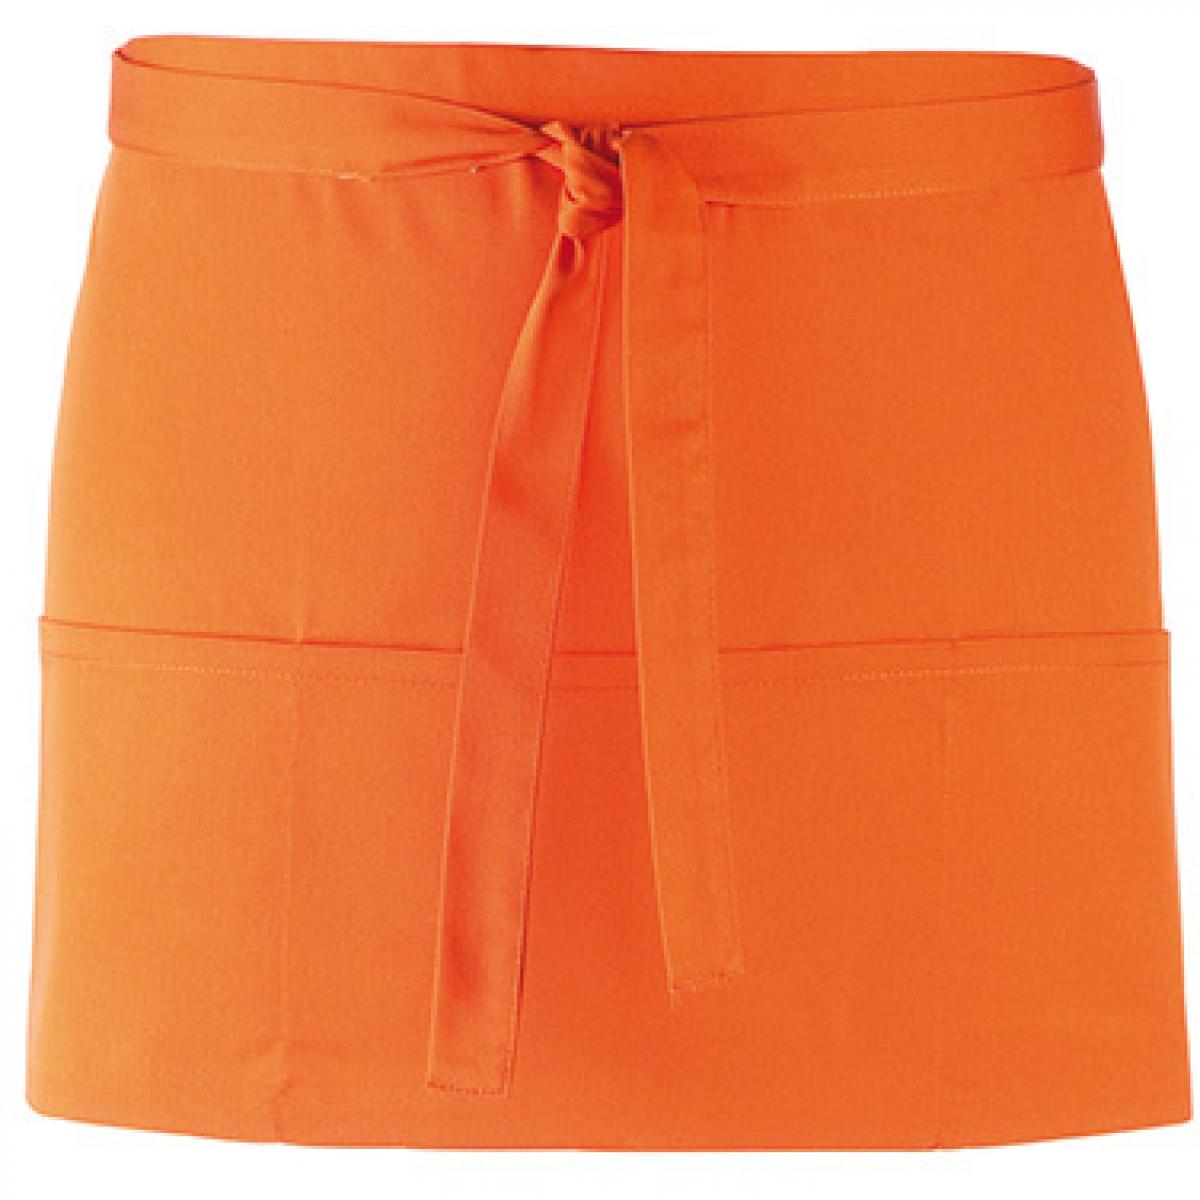 Hersteller: Premier Workwear Herstellernummer: PR155 Artikelbezeichnung: Taschenschürze ´Colours´ - 60 x 33 cm - Hauswäsche: bis 60 ° Farbe: Orange (ca. Pantone 1655)